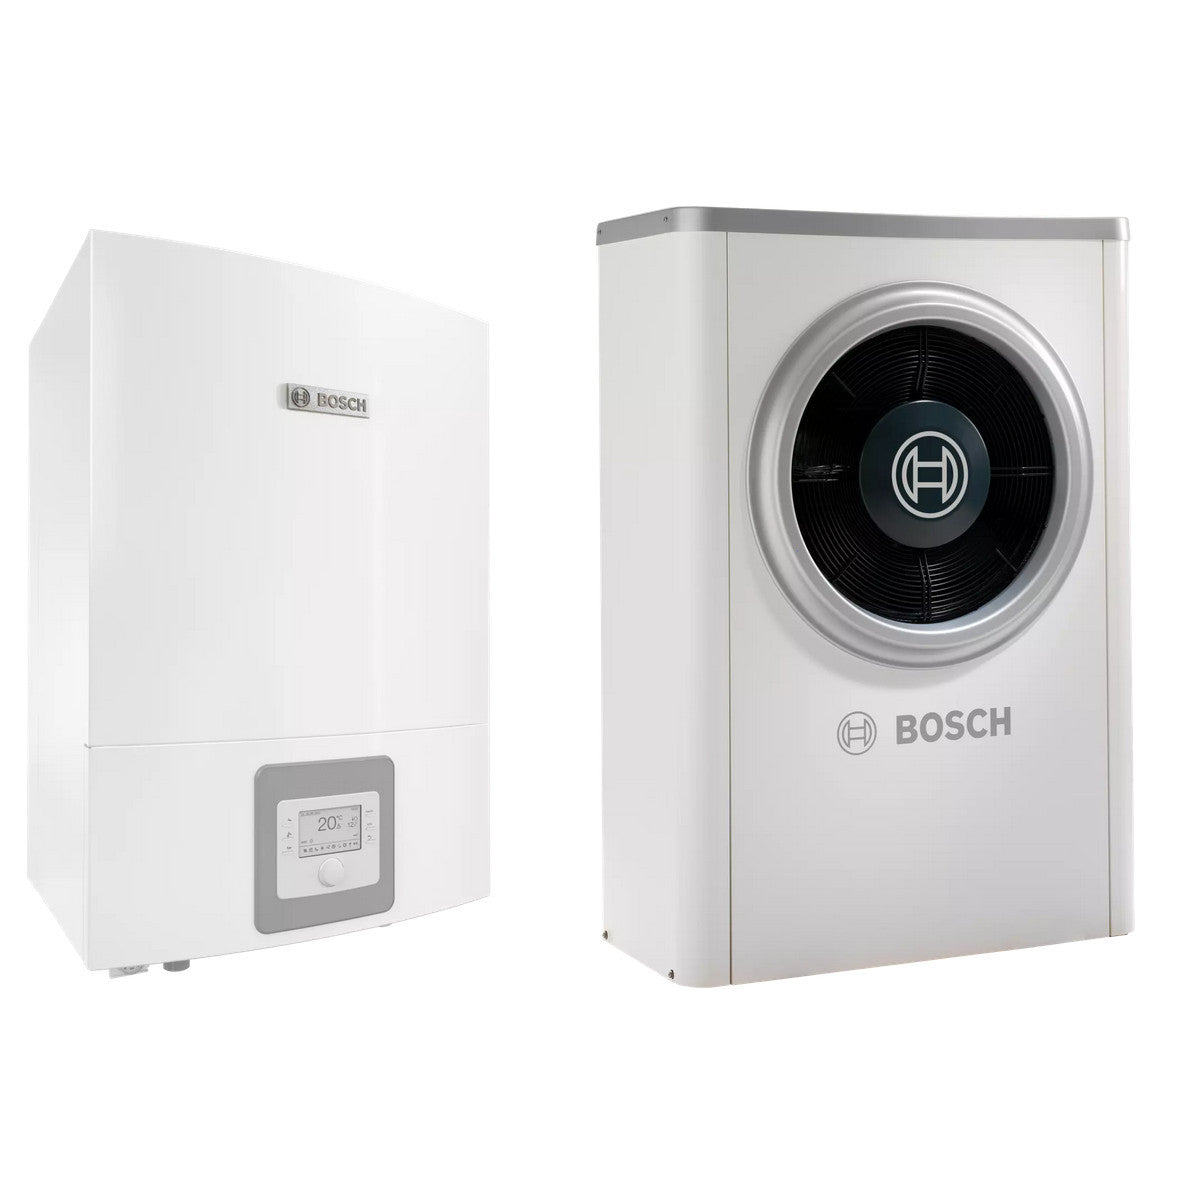 Bosch Compress 7000i AWB+AW-13T levegő-víz hőszivattyú, monoblok, fűtőbetét nélkül, R410A-0